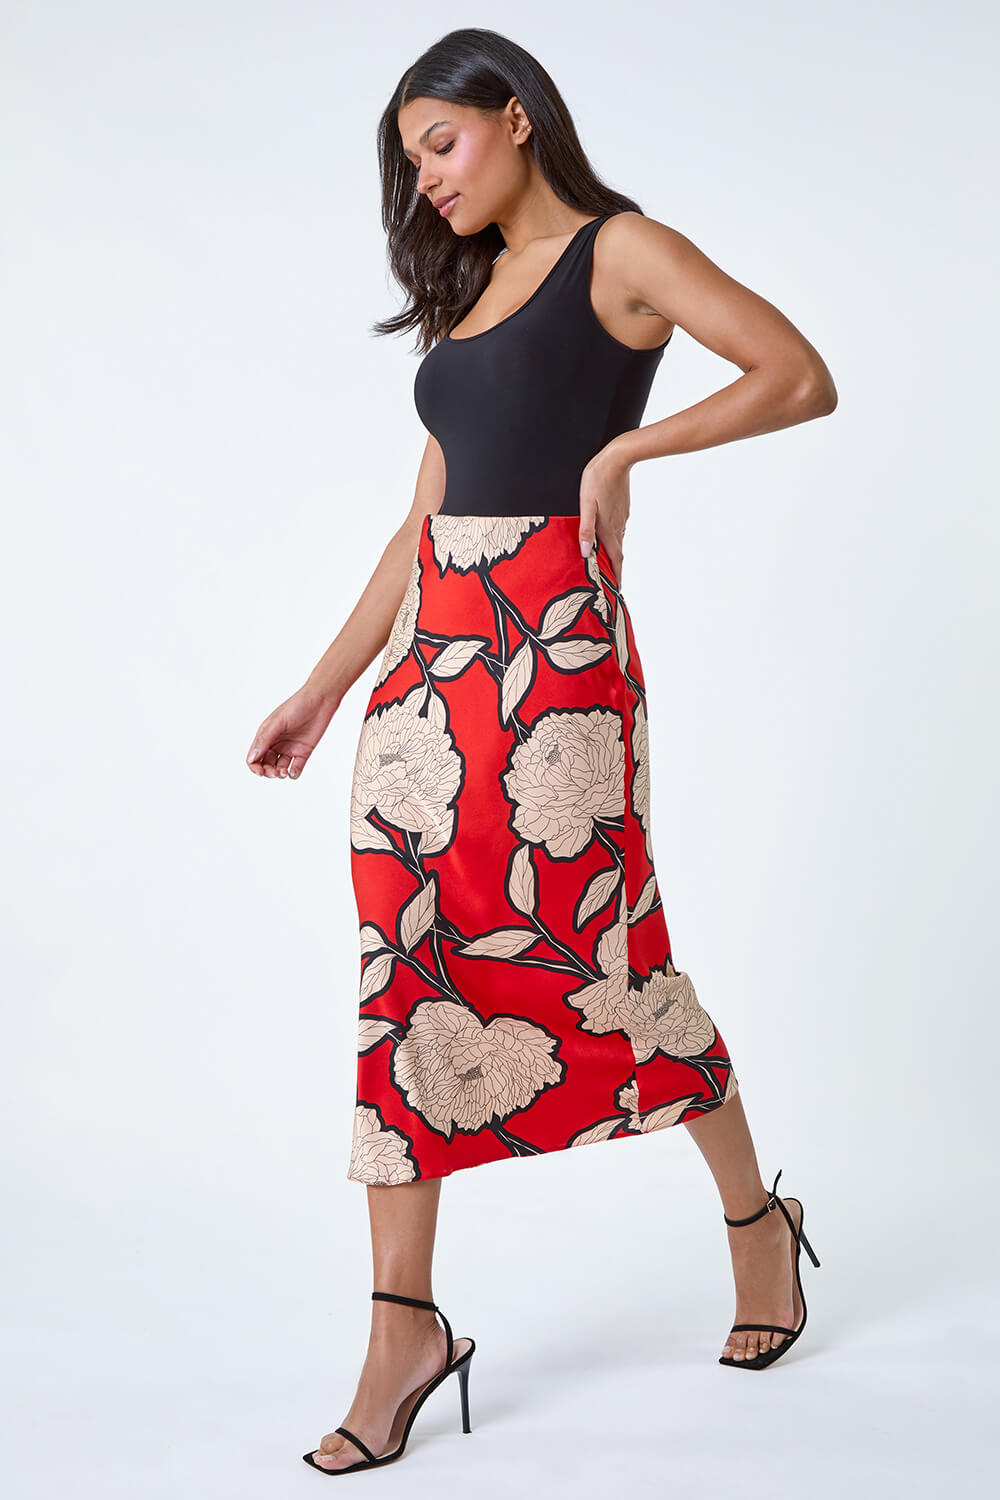 ORANGE Floral Satin Bias Cut Midi Skirt, Image 2 of 5